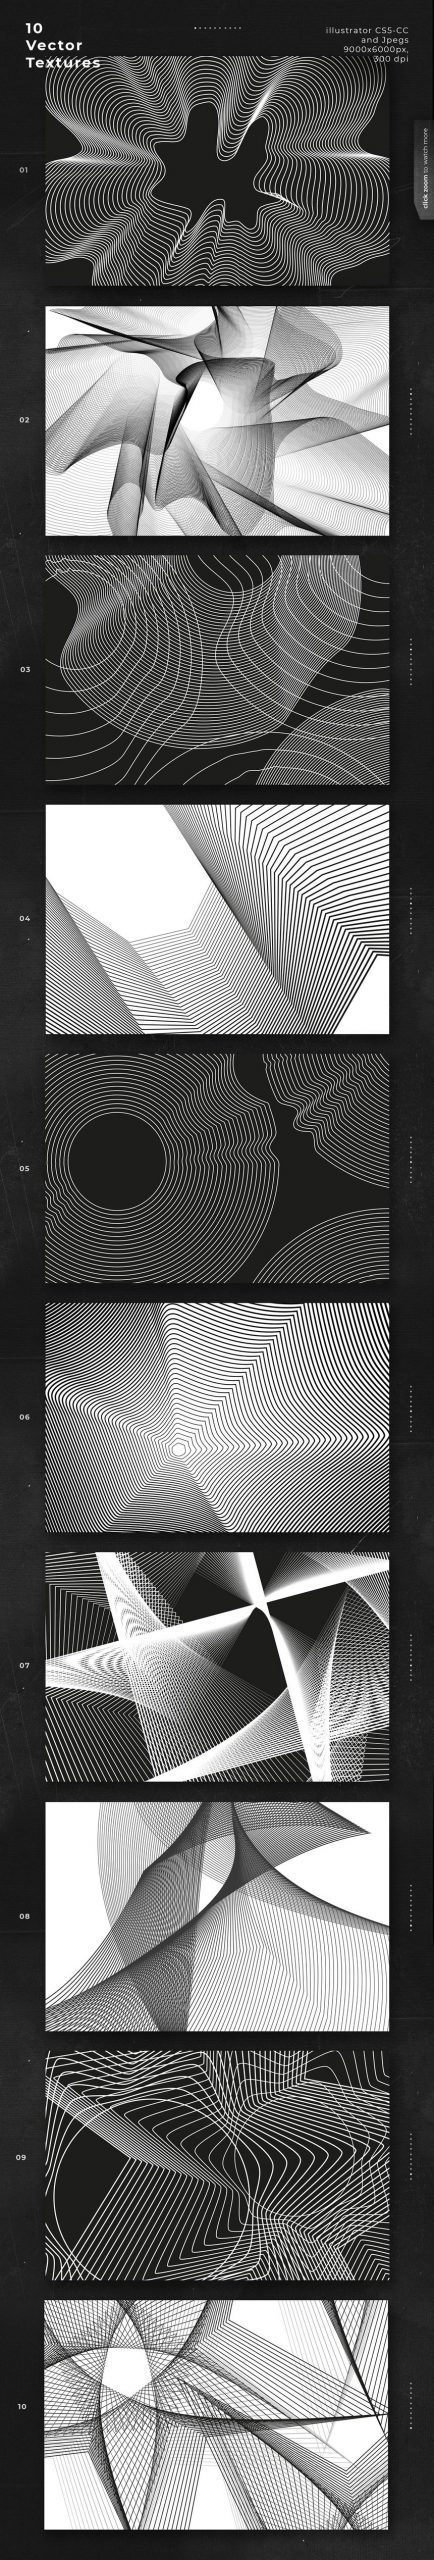 PNG素材-抽象矢量几何线条形状背景纹理素材 图片素材 第9张